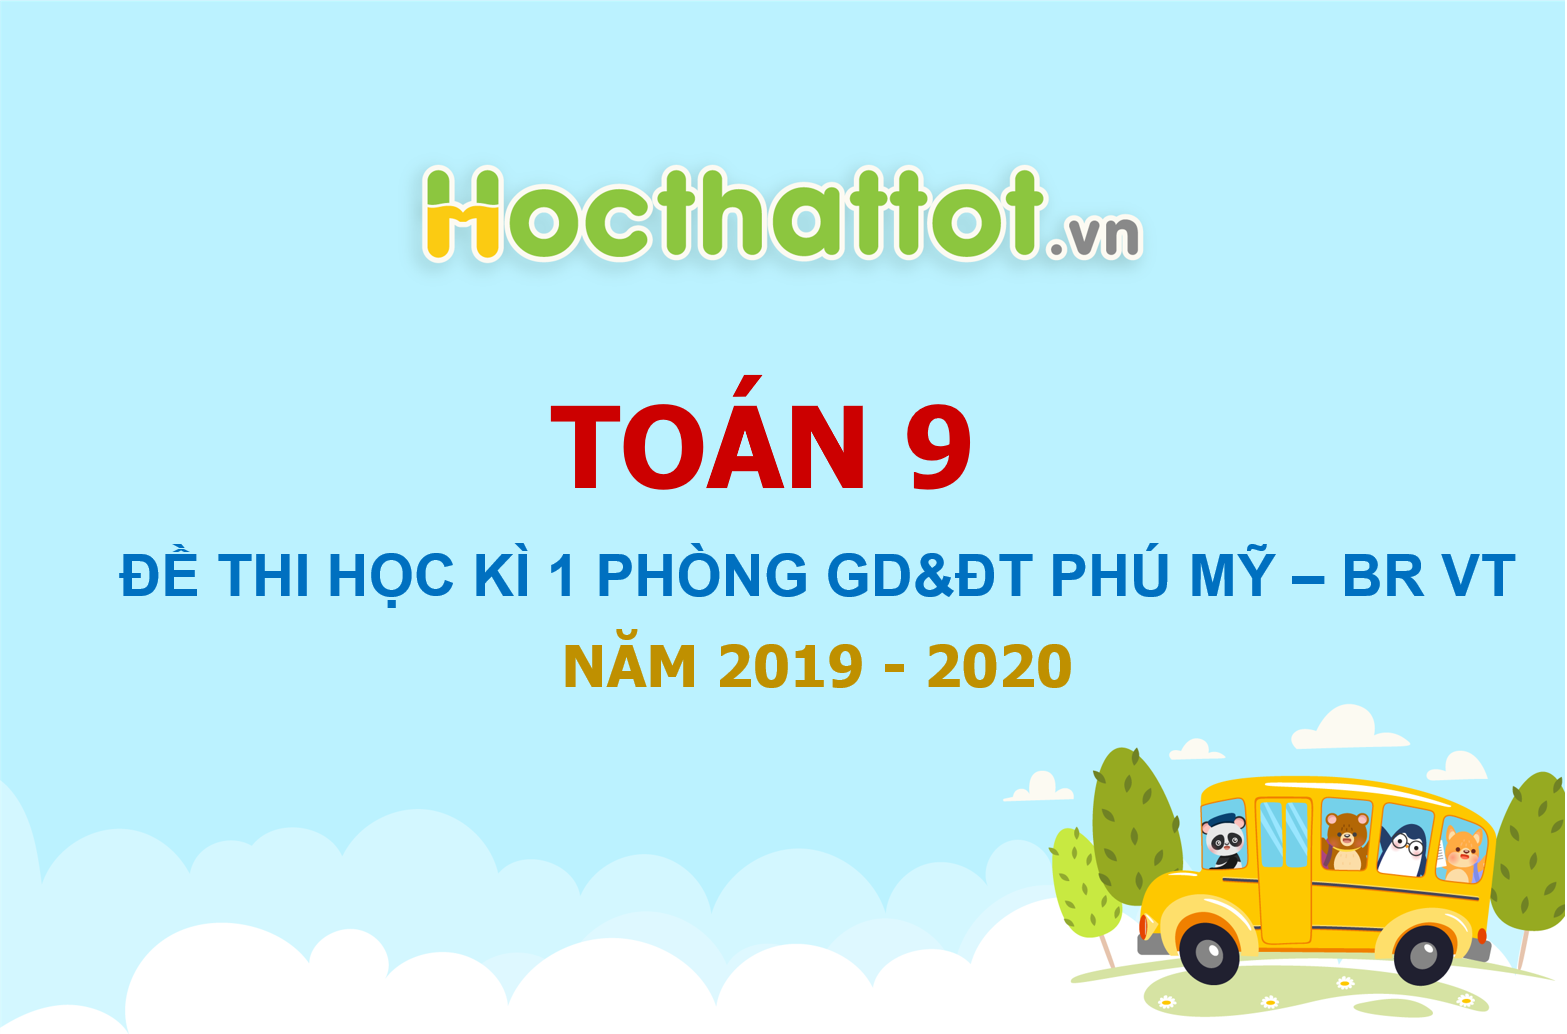 de-thi-hoc-ki-1-toan-9-nam-2019-2020-phong-gddt-phu-my-br-vt.pdf